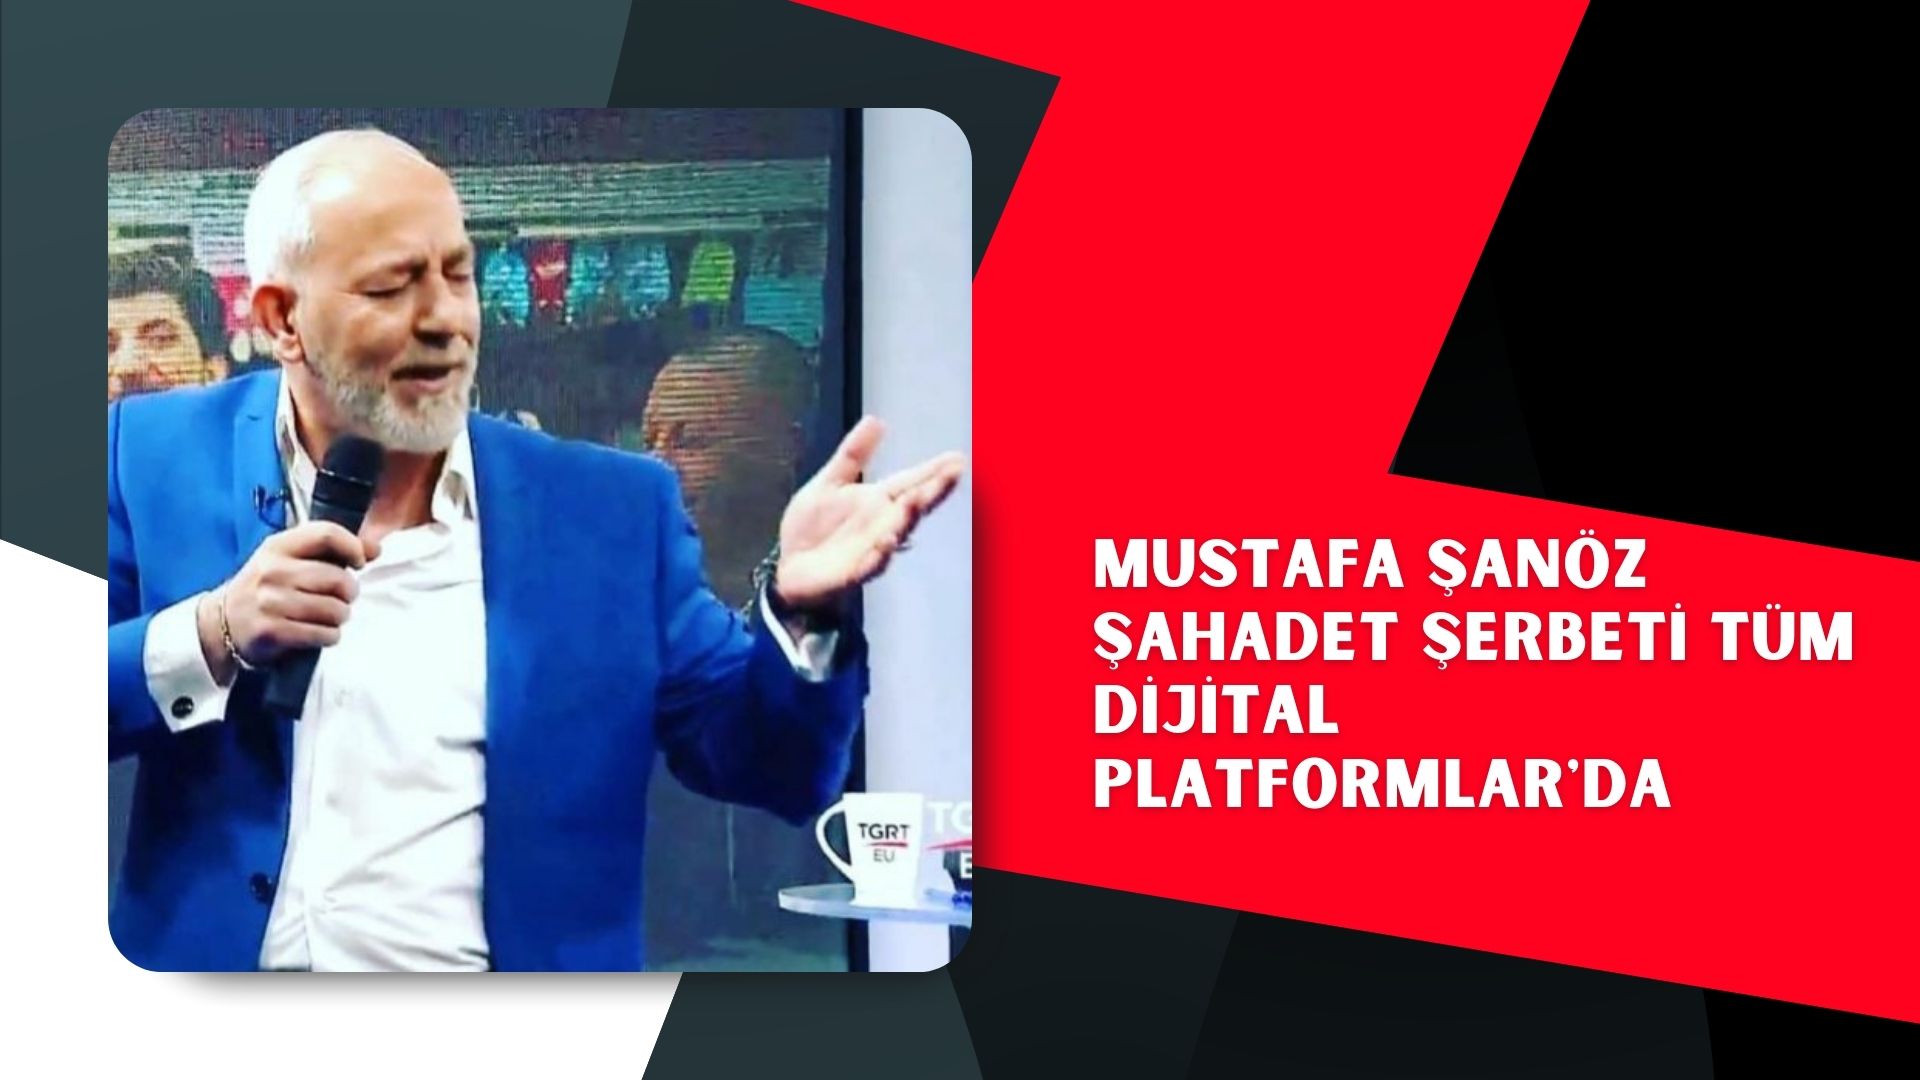 Mustafa Şanöz ŞAHADET ŞERBETİ tüm dijital platformlar’da